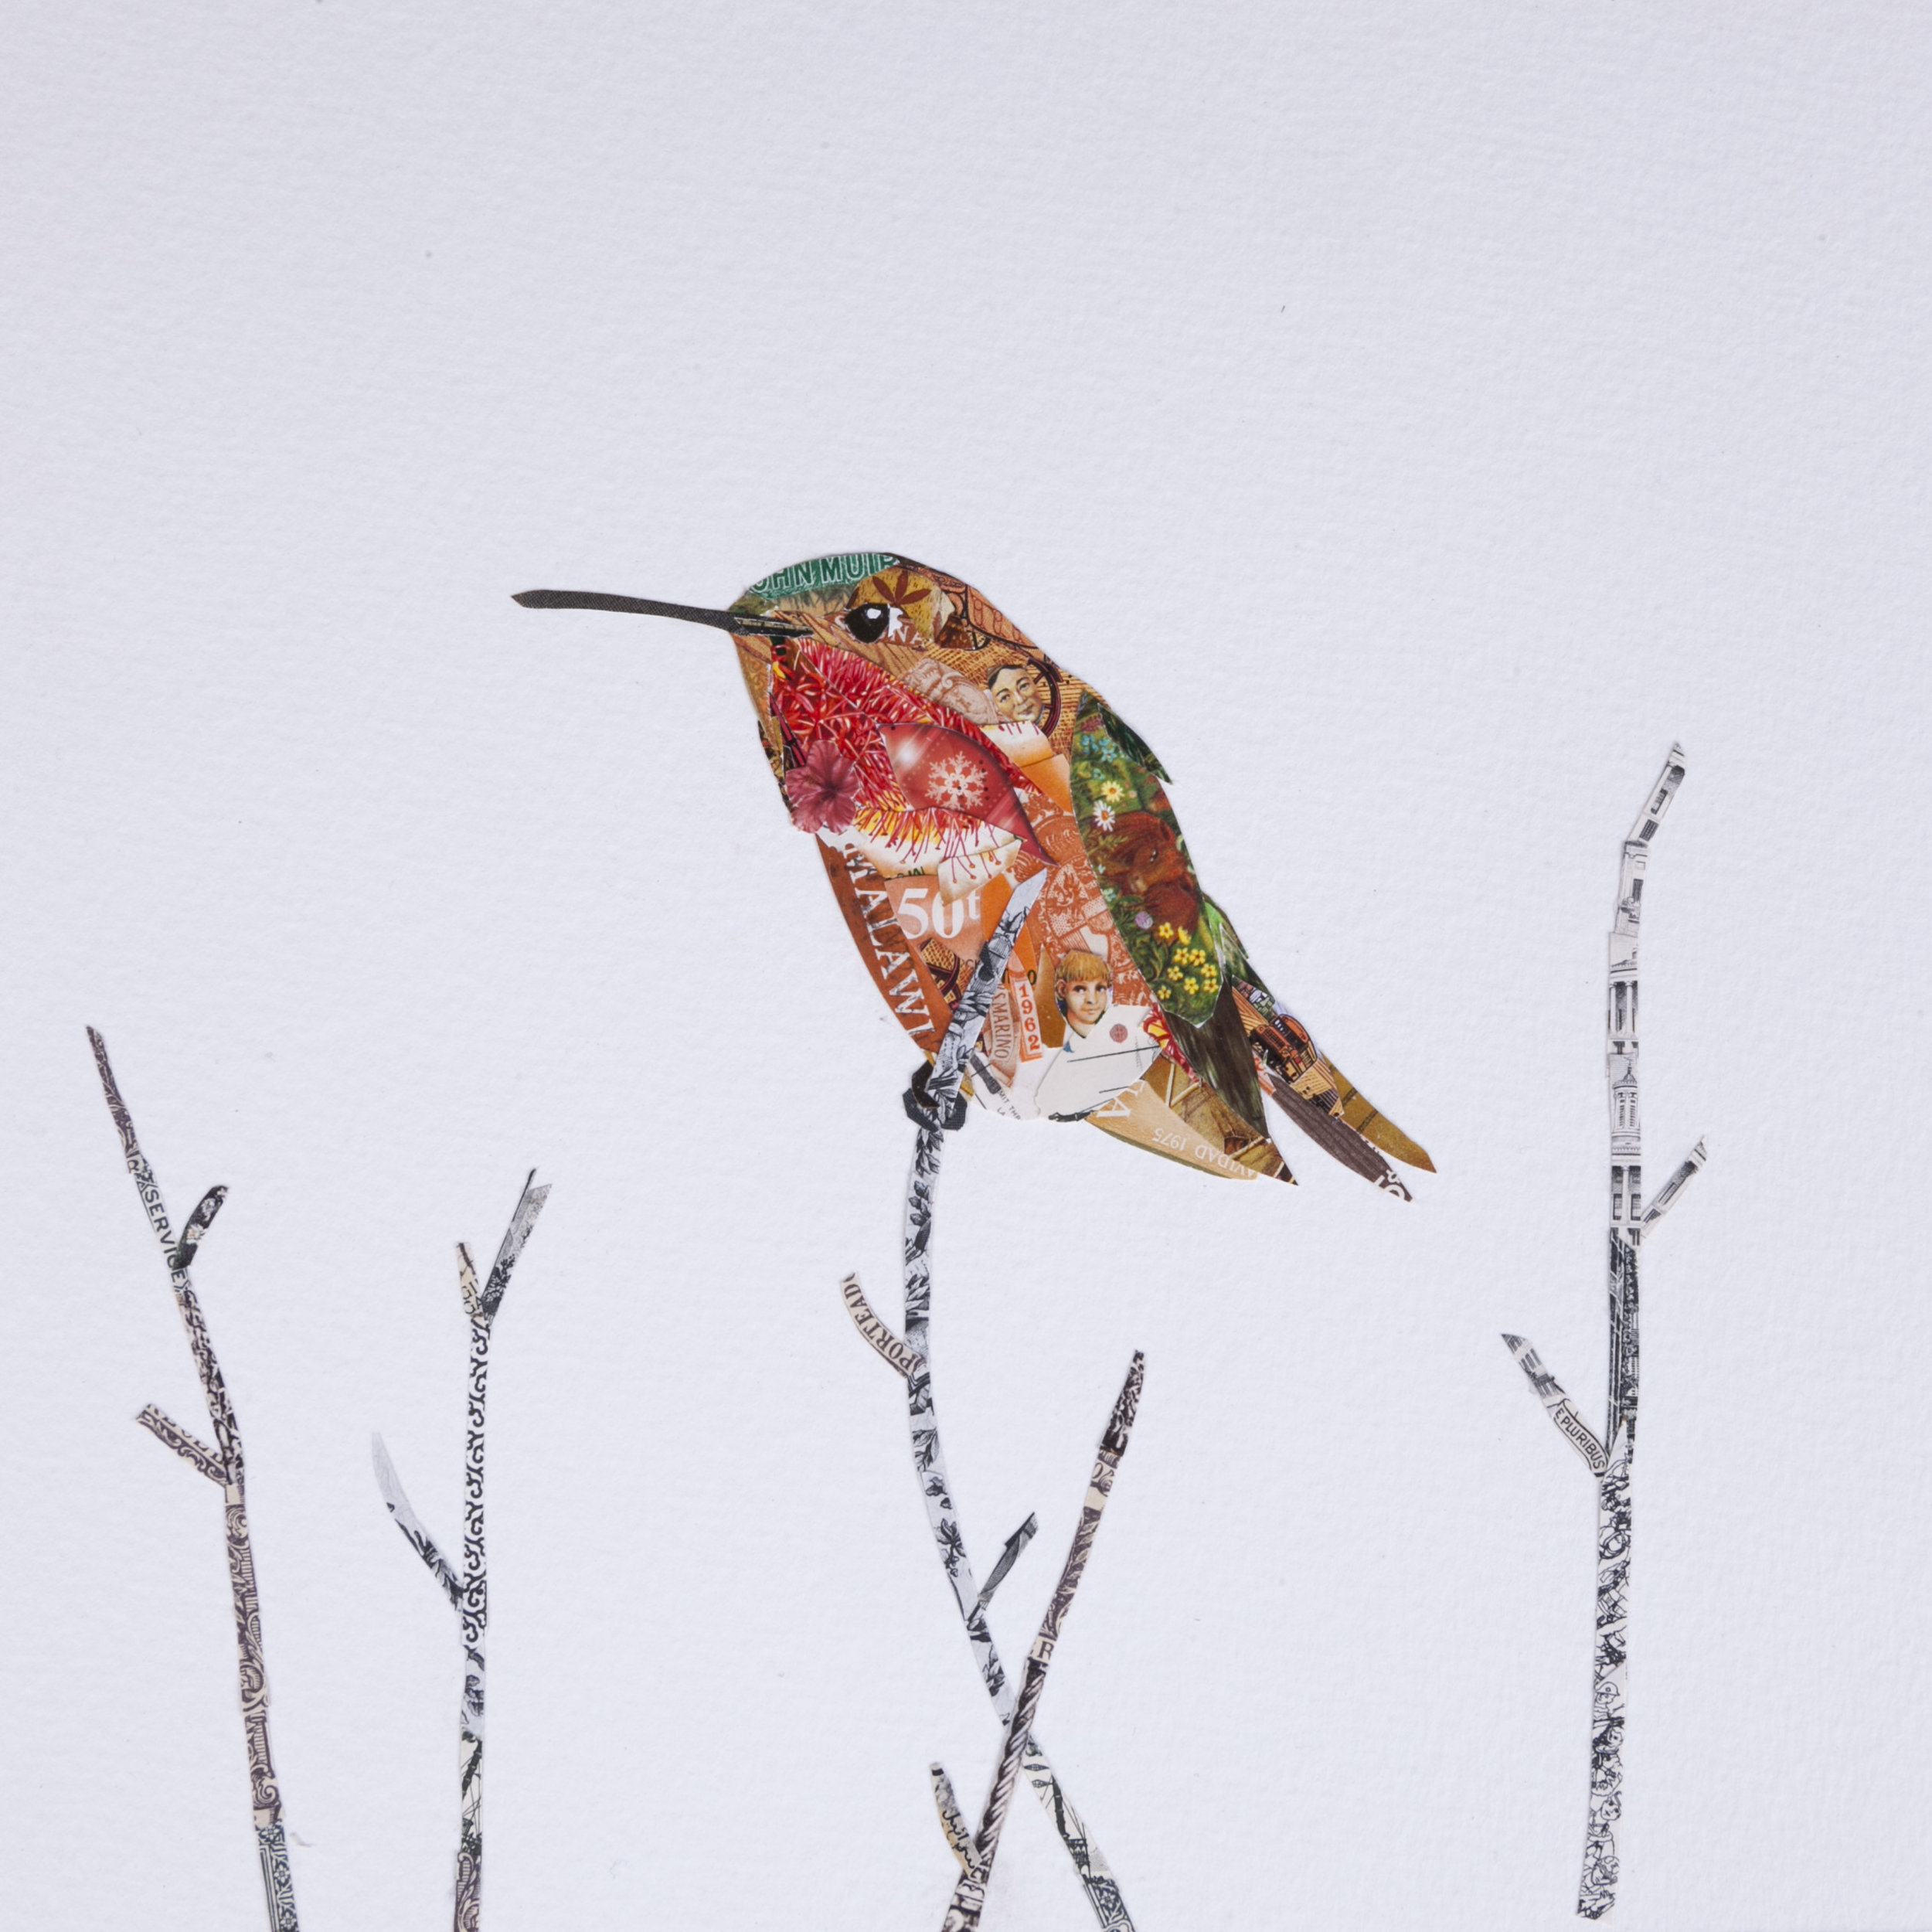 Allen's Hummingbird #5, 2016